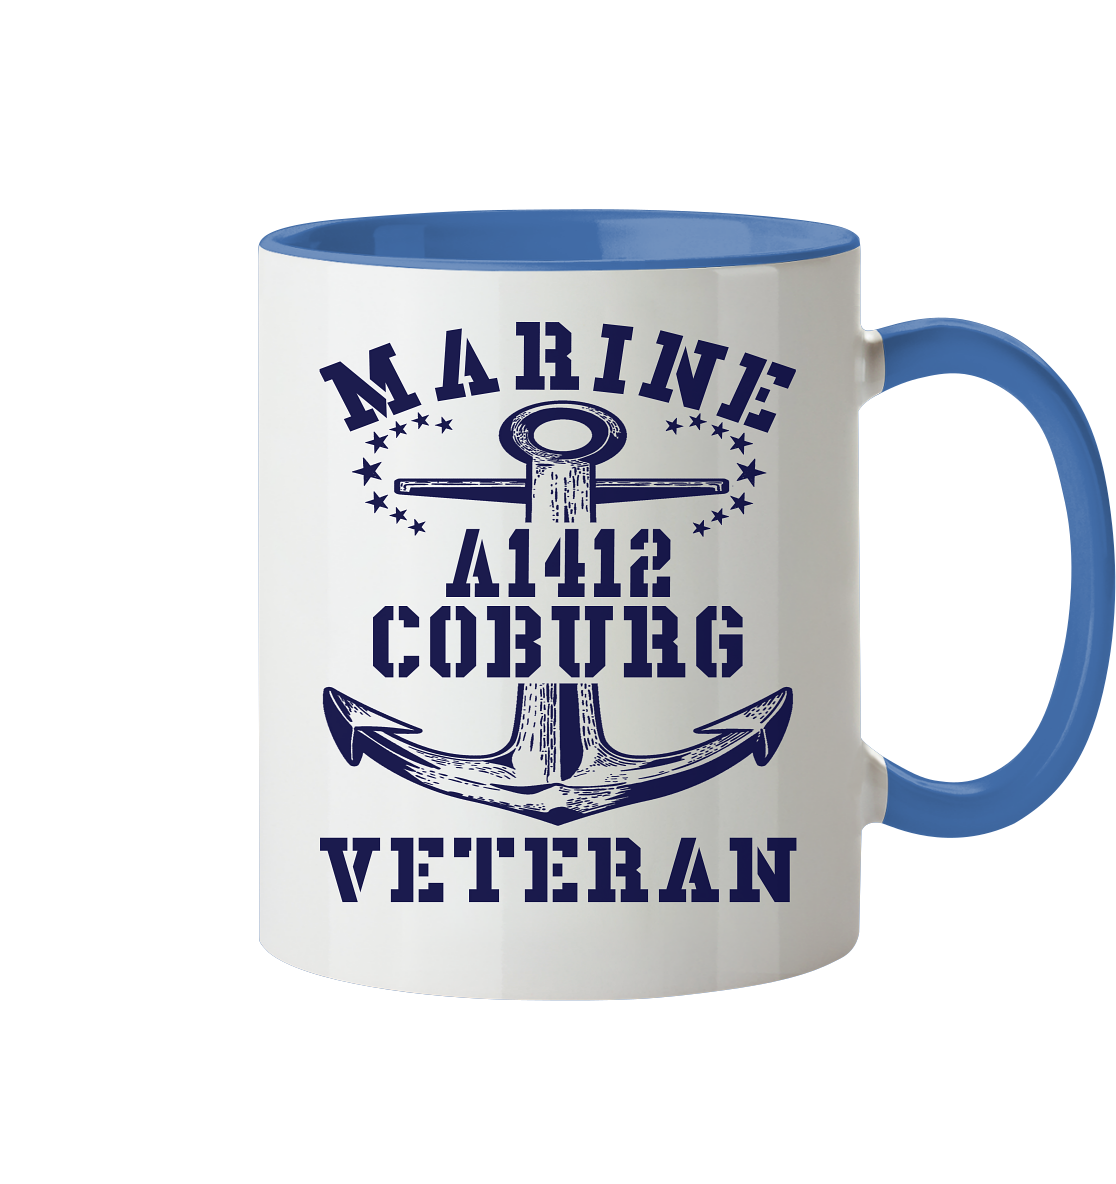 Troßschiff A1412 COBURG Marine Veteran  - Tasse zweifarbig